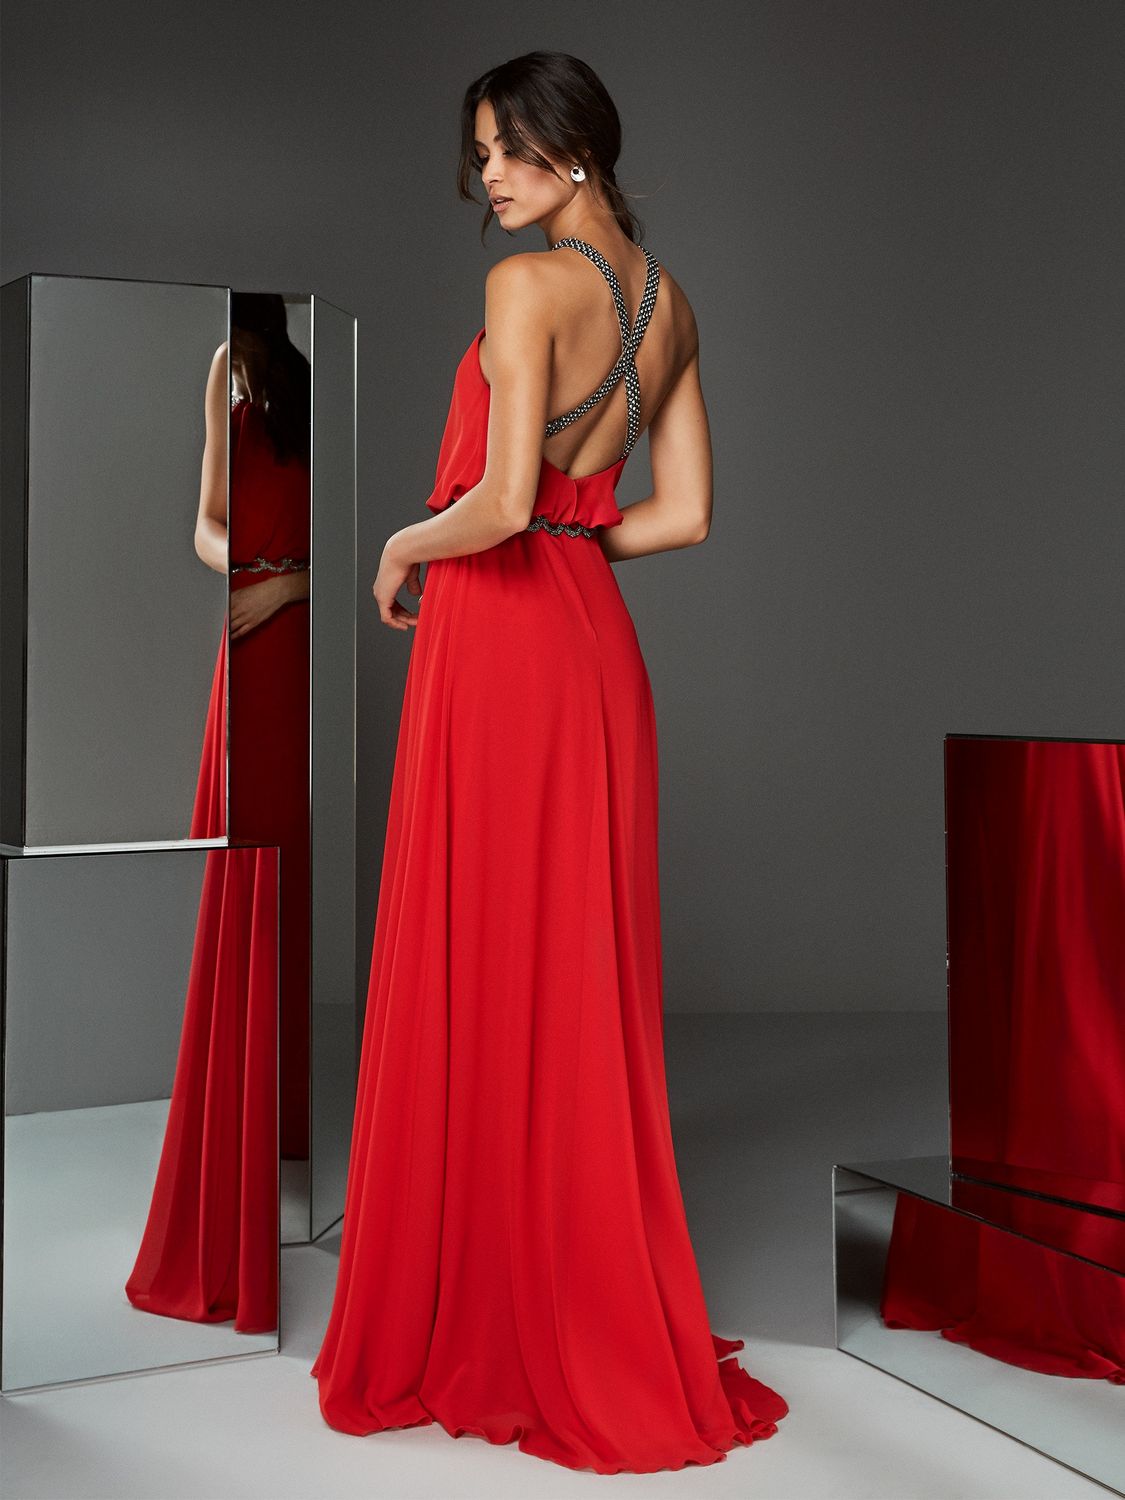 vrouw met jurk in het rood